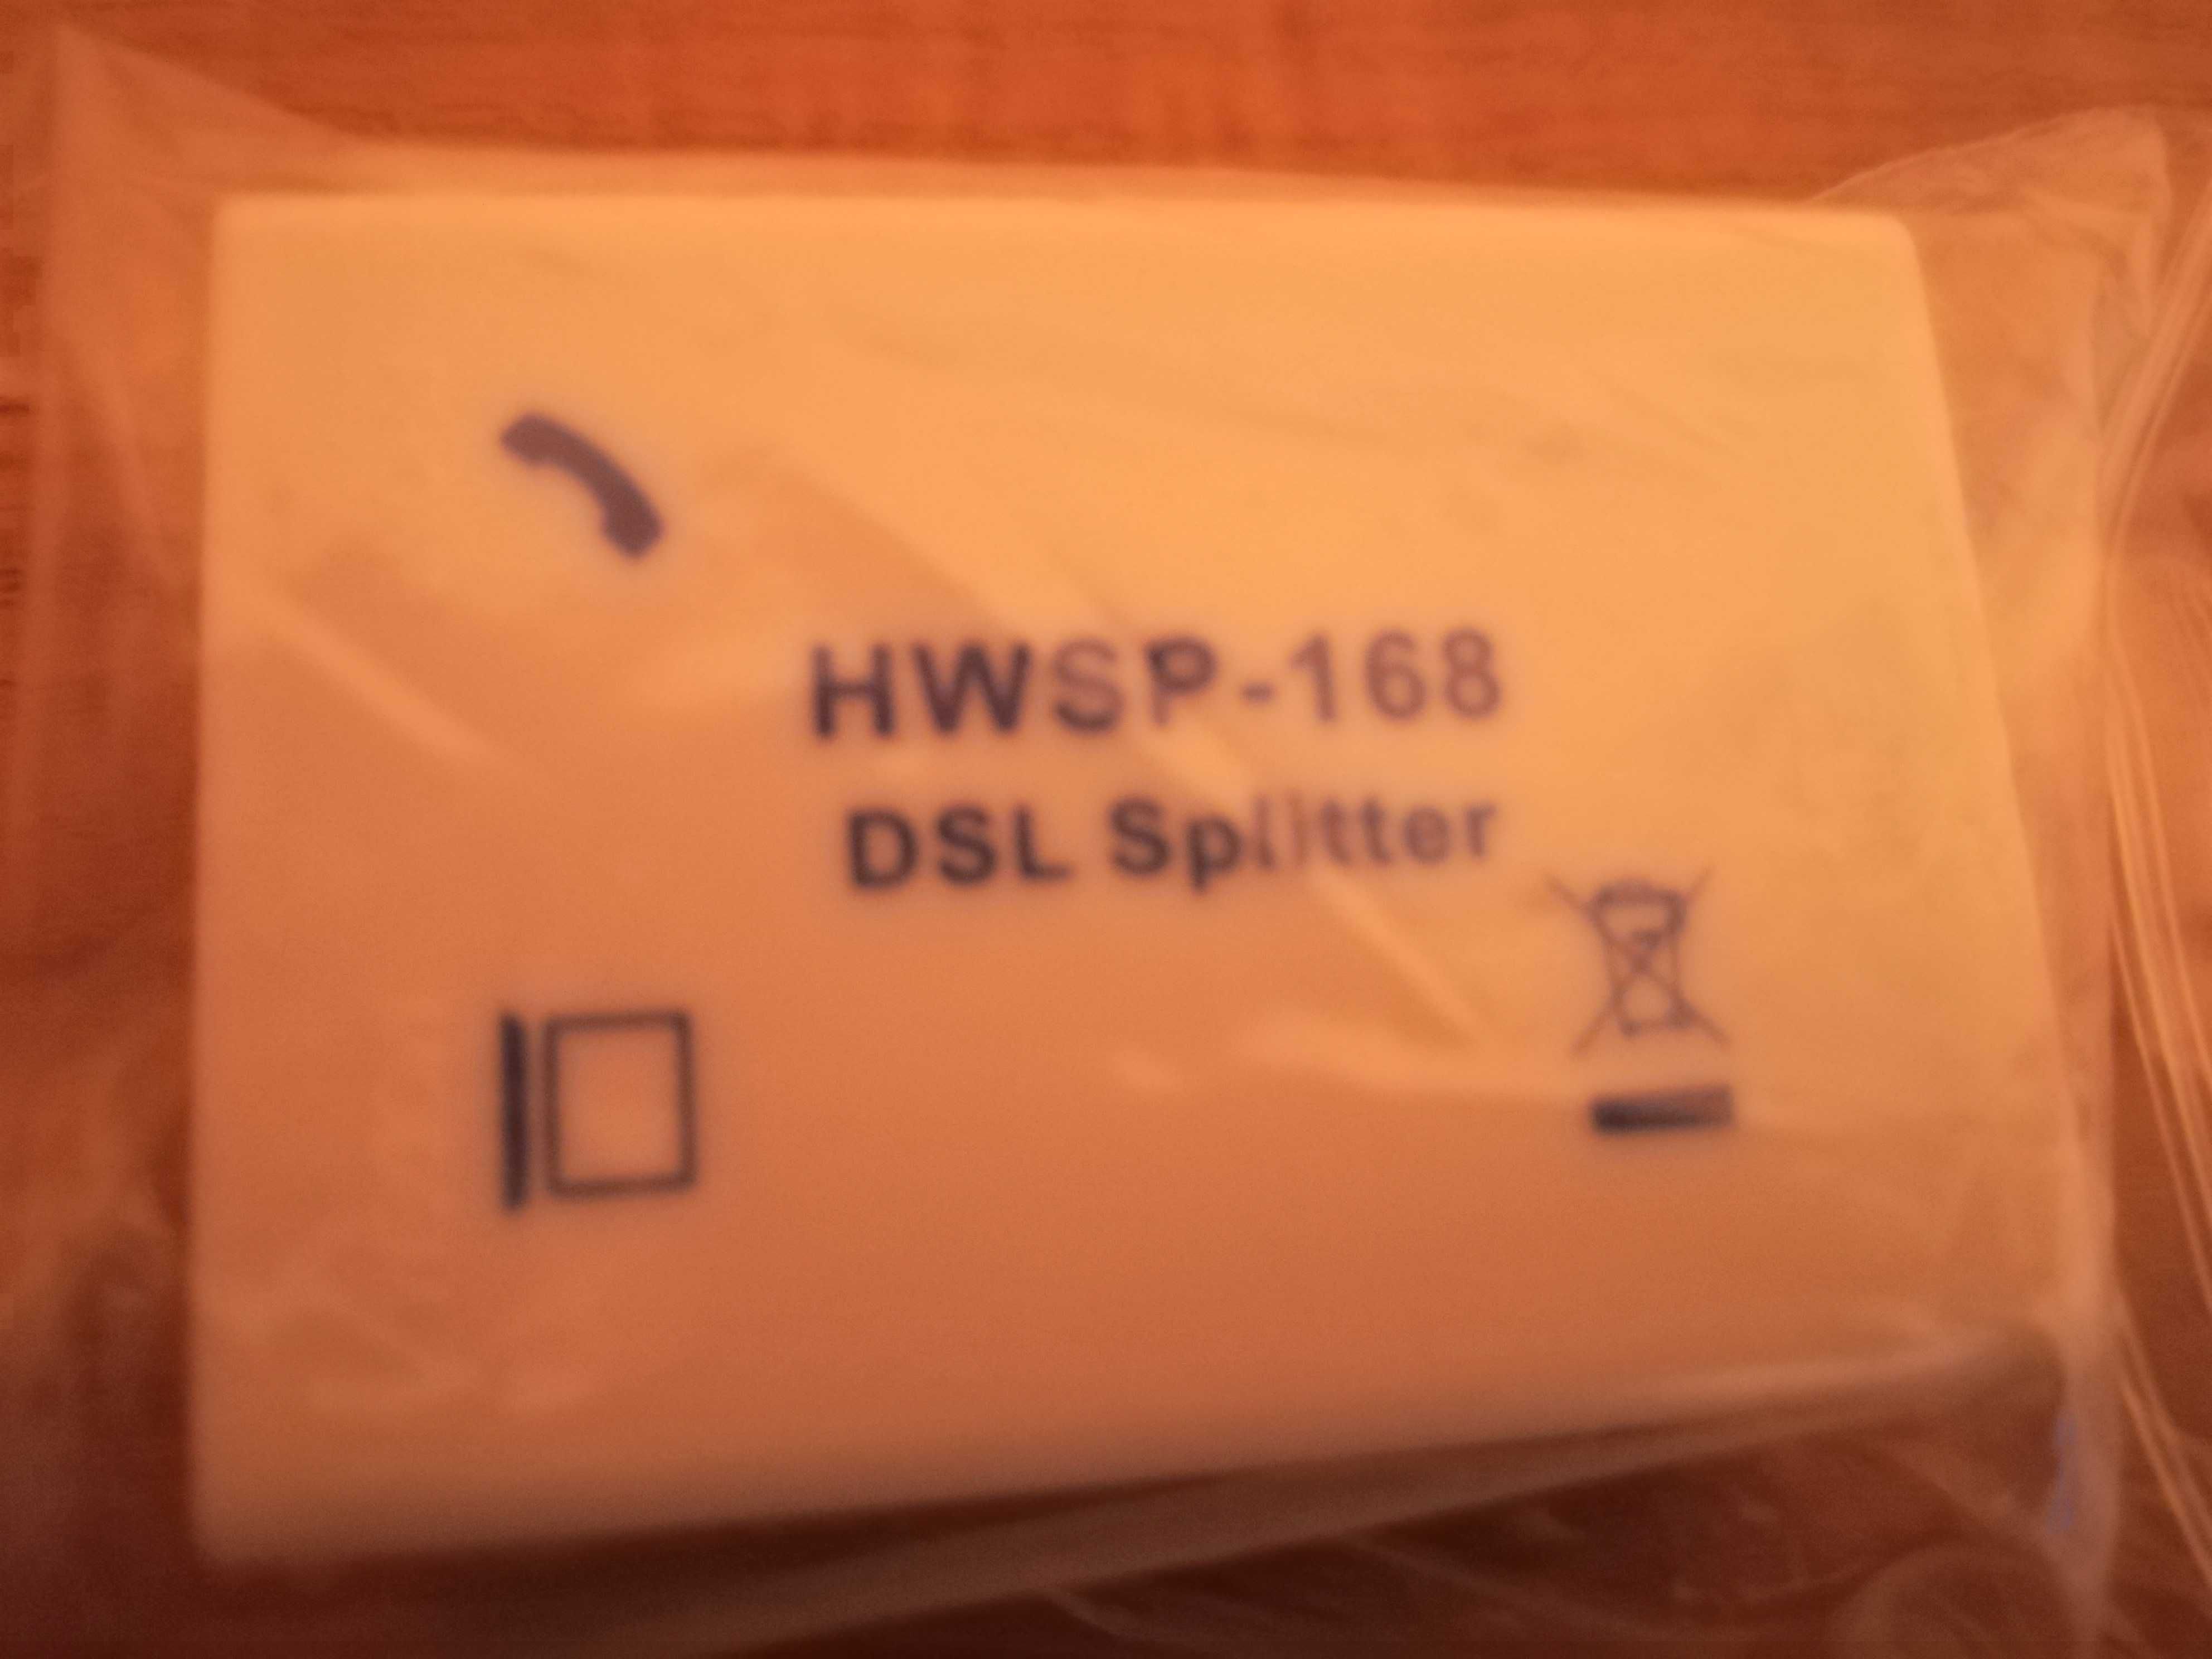 DSL Splitter HWSP-168